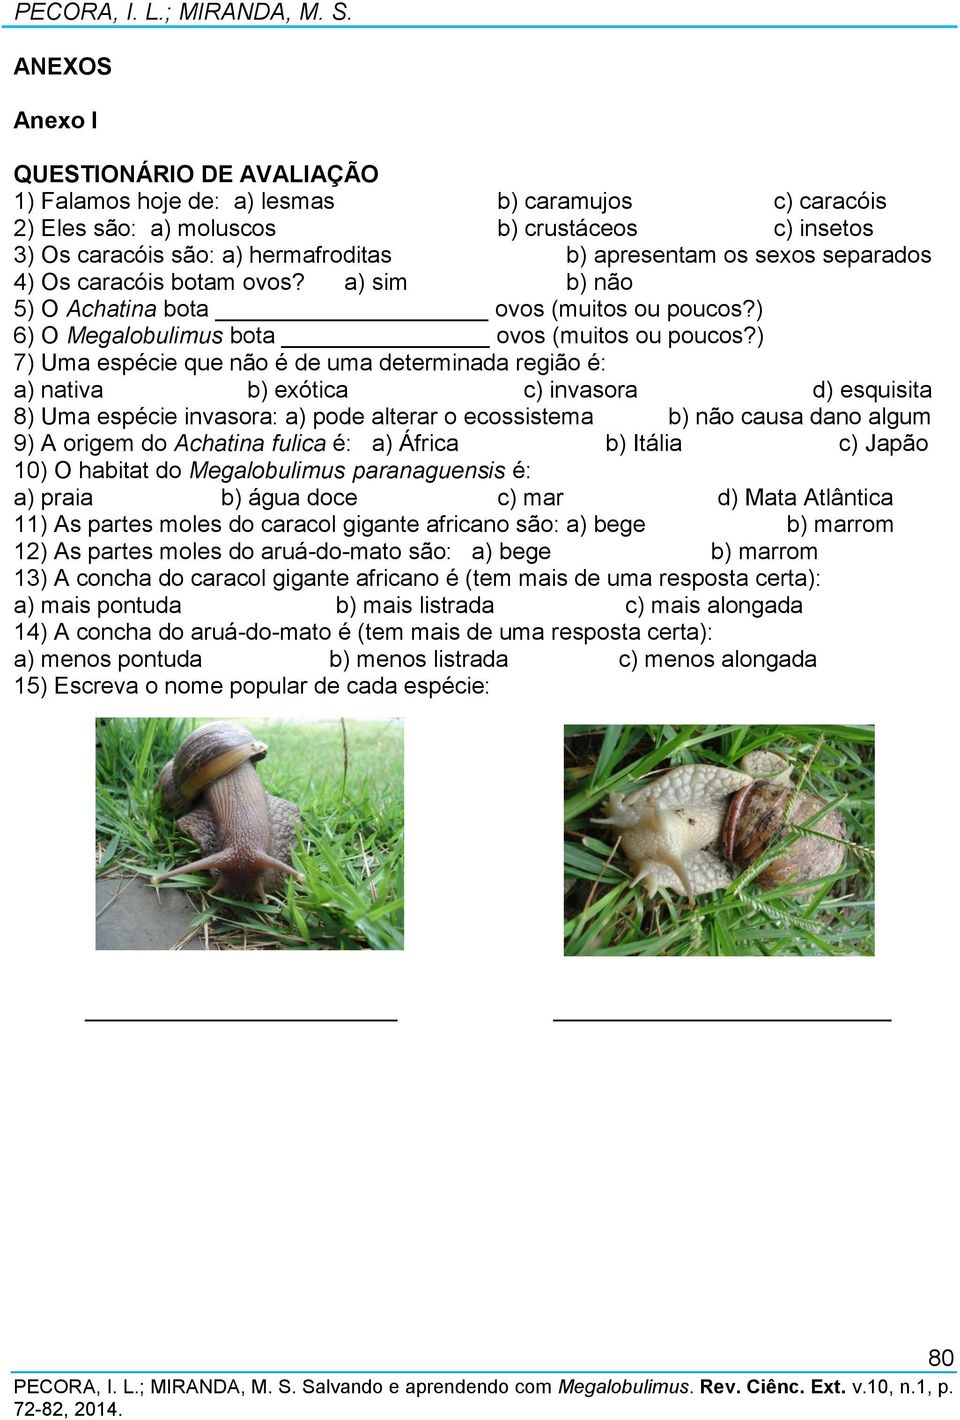 sexos separados 4) Os caracóis botam ovos? a) sim b) não 5) O Achatina bota ovos (muitos ou poucos?) 6) O Megalobulimus bota ovos (muitos ou poucos?